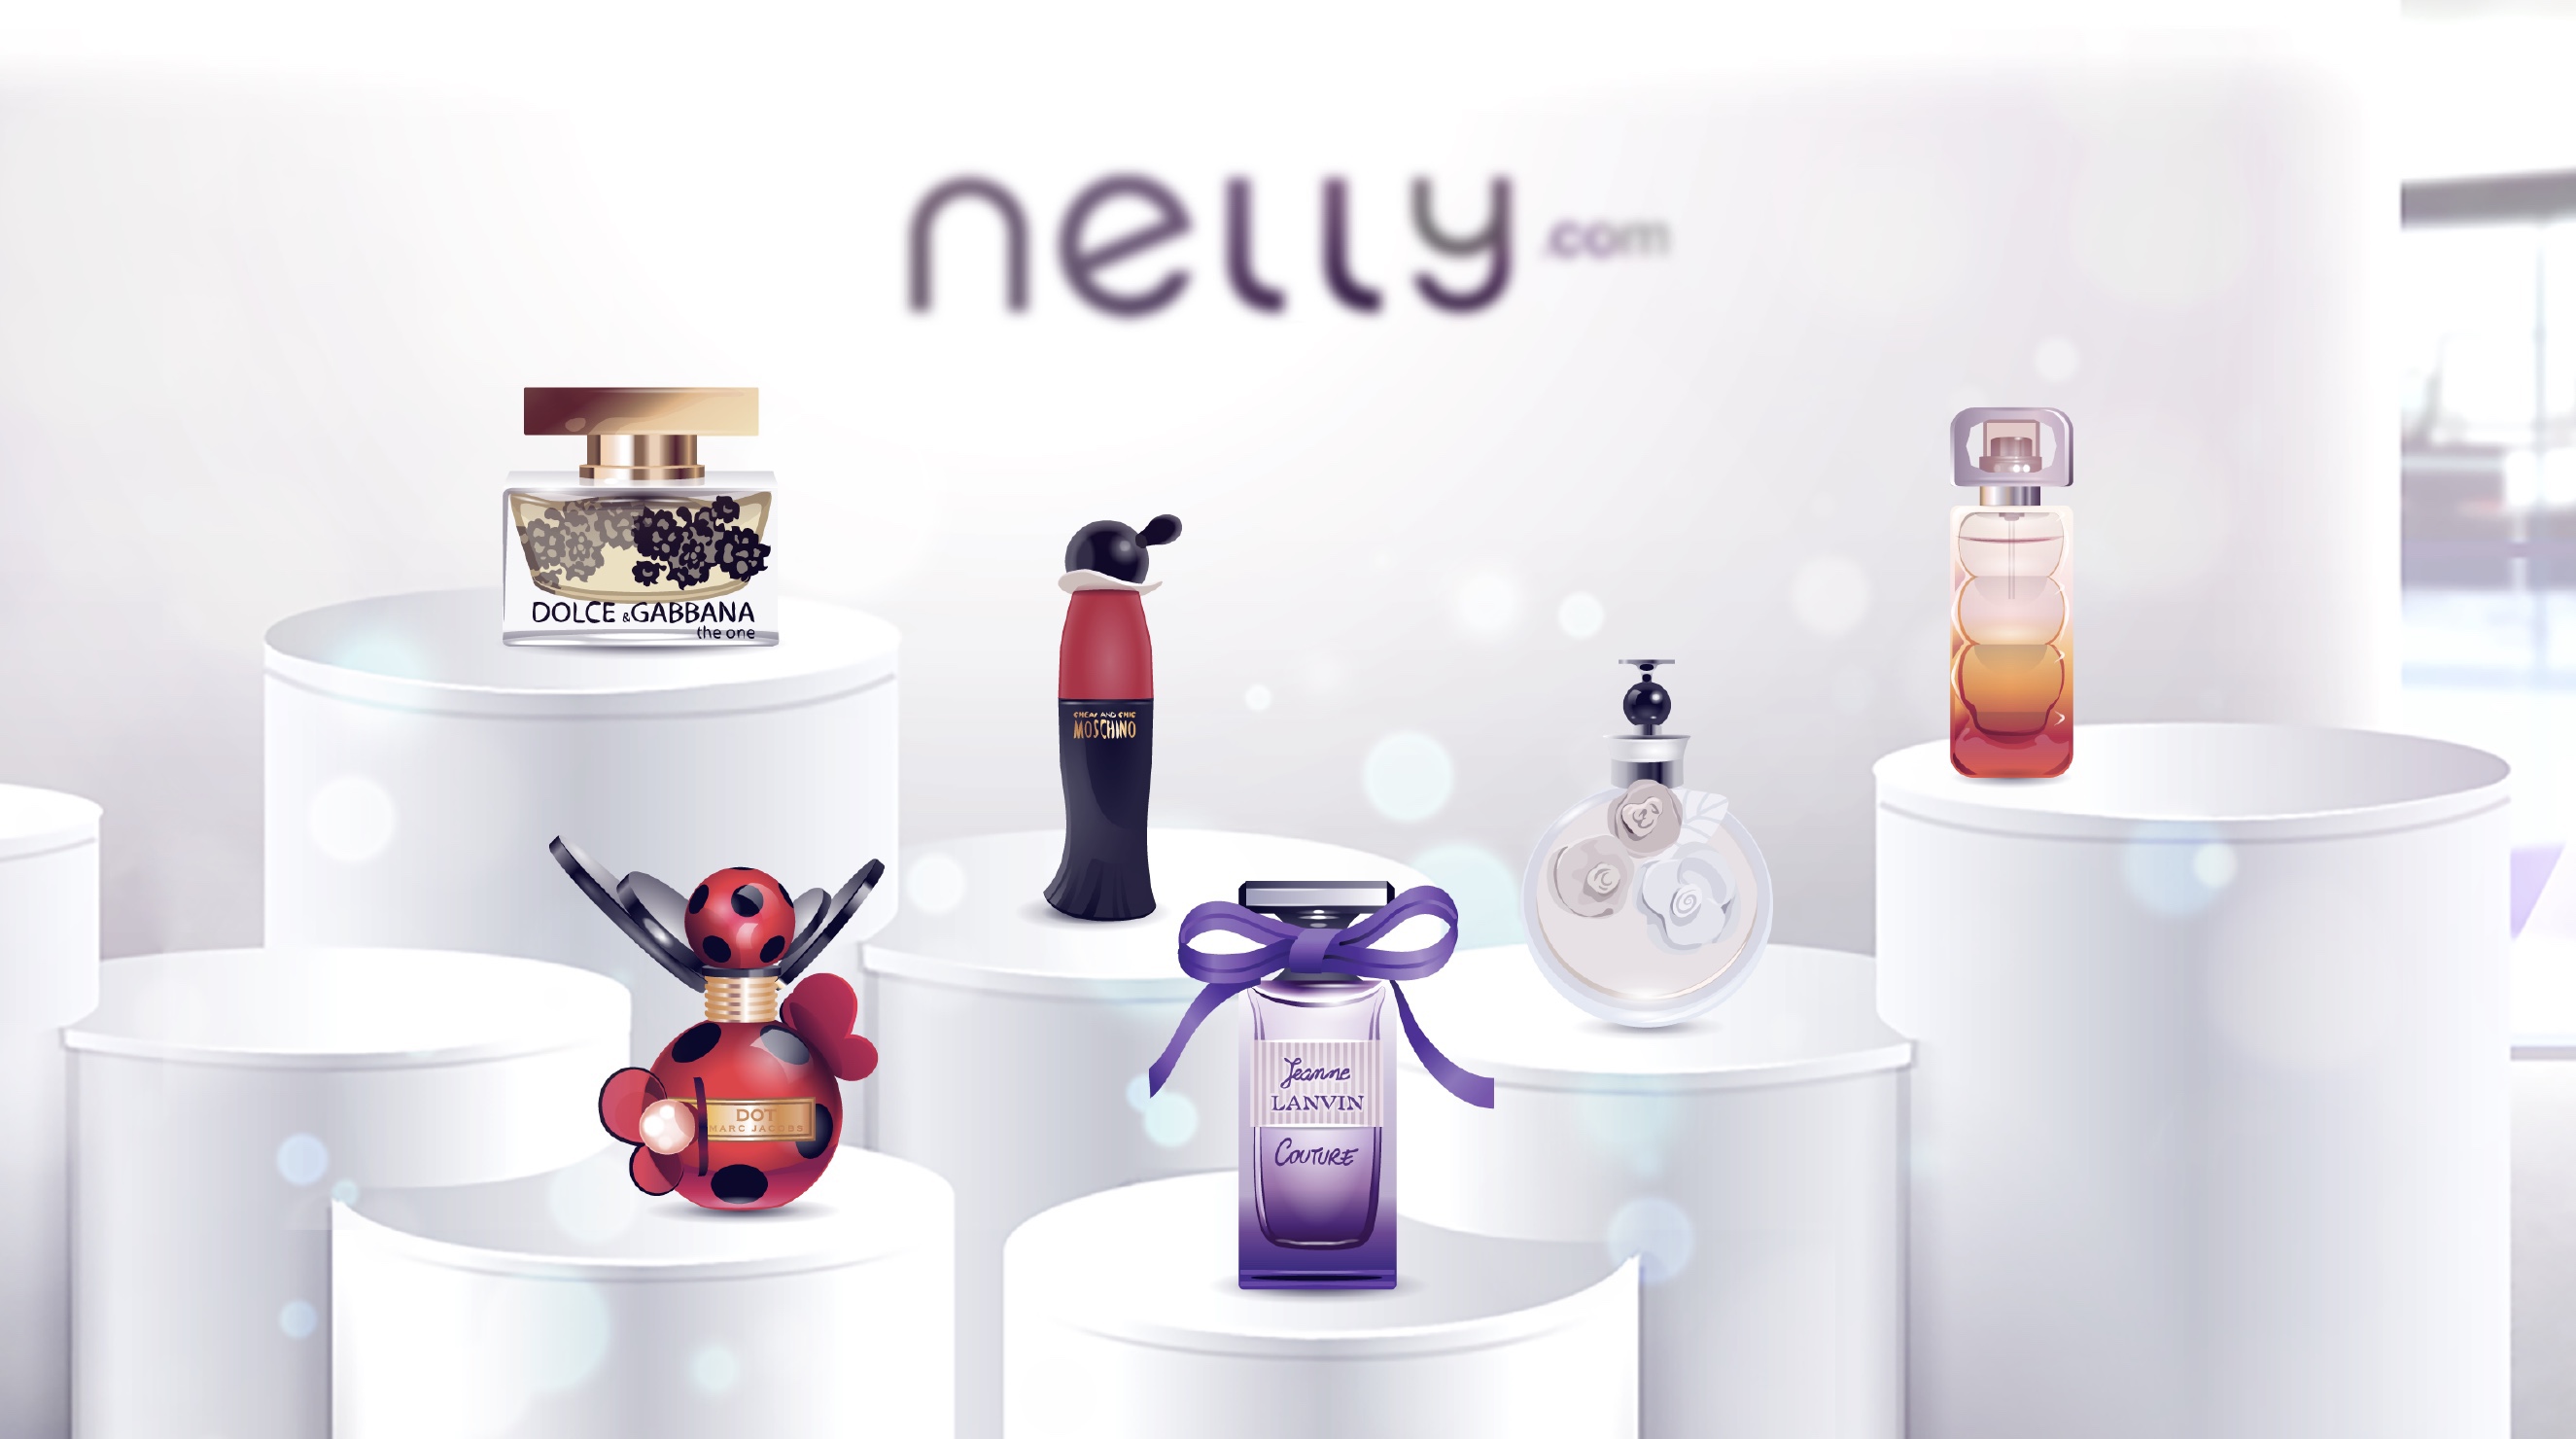 Stardoll campaign design for nelly